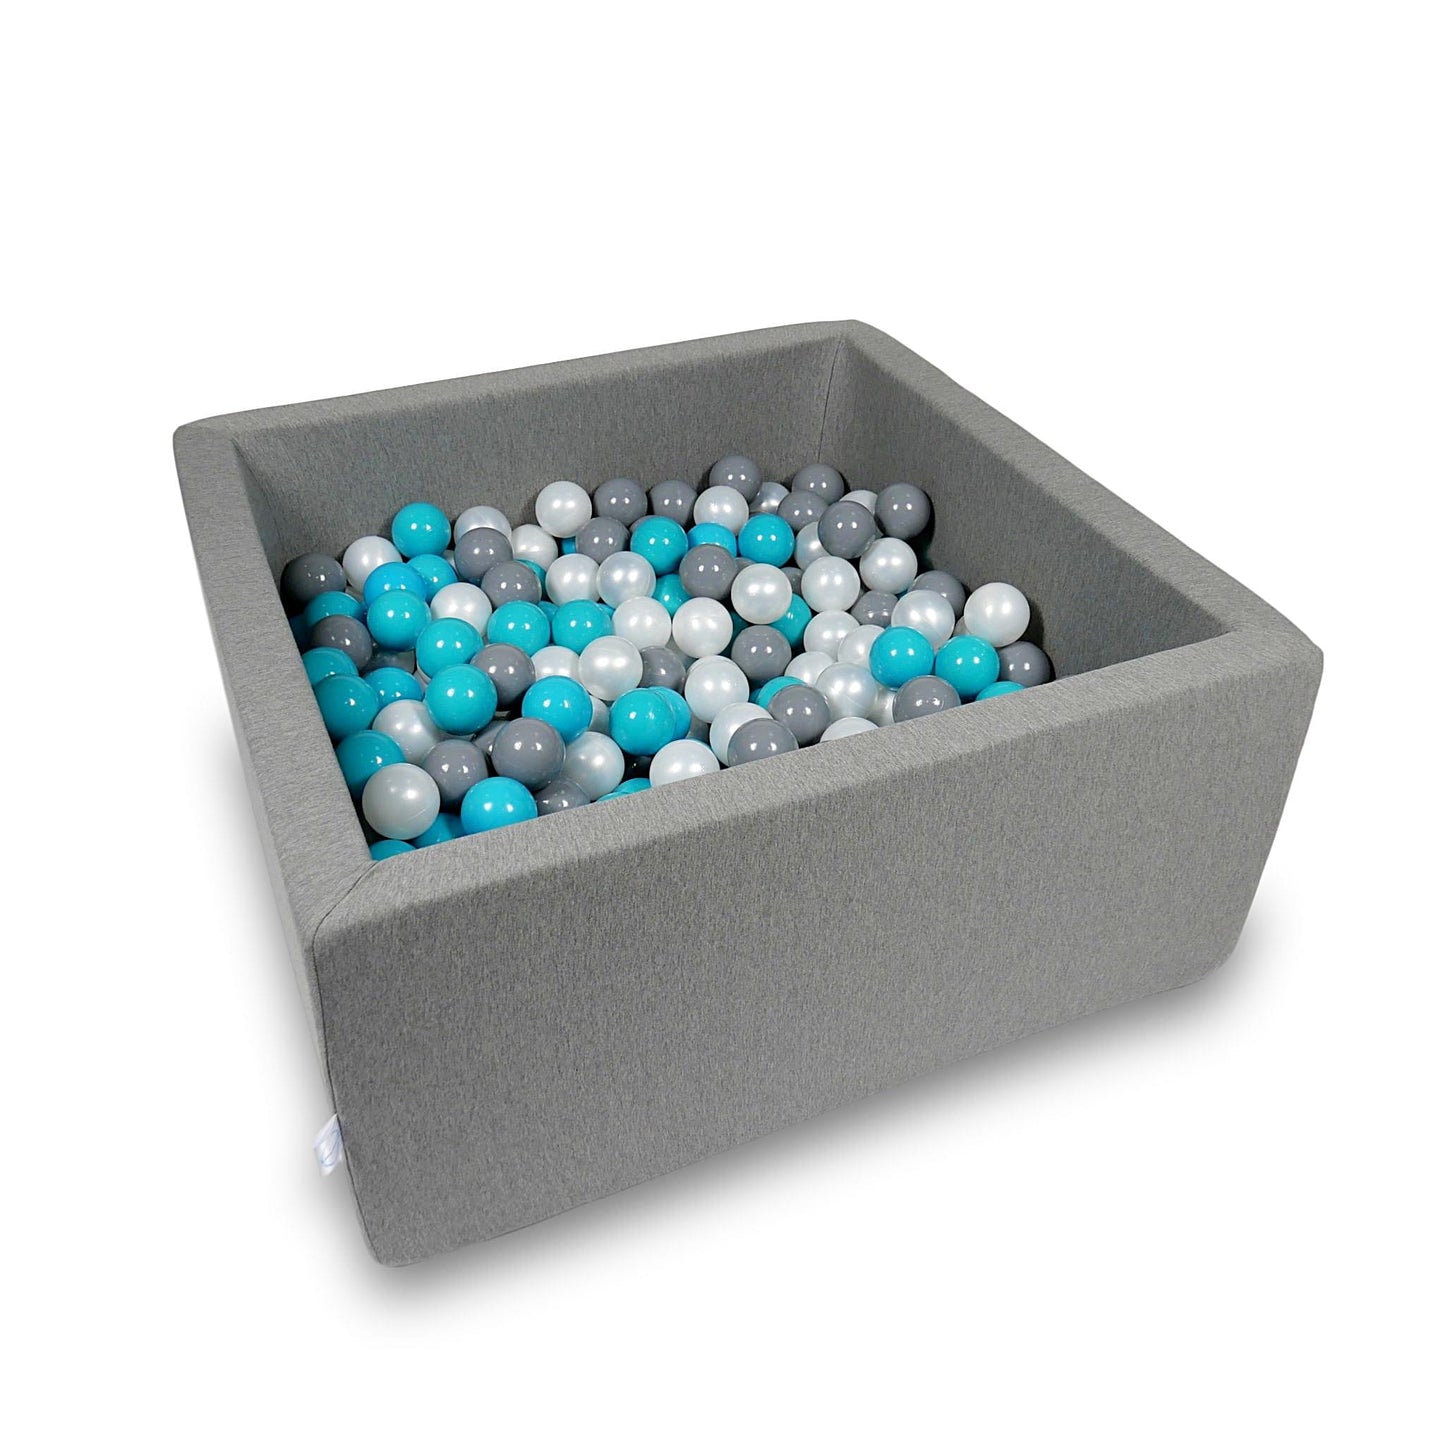 Piscine à Balles 90x90x40cm gris avec balles 400pcs (turquoise, gris, perle)